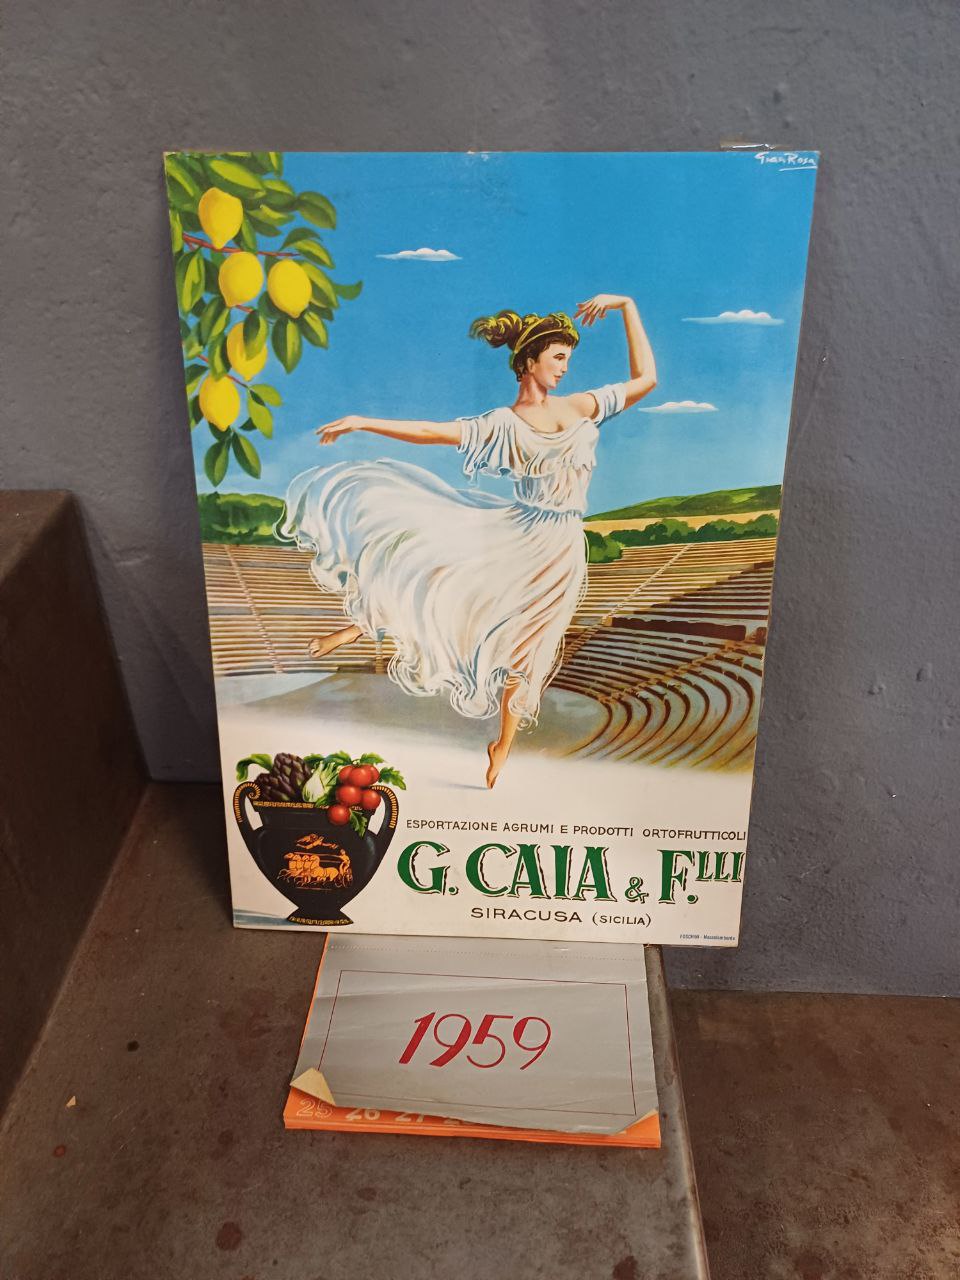 Cartonato pubblicitario agrumi e prodotti ortofrutticoli Calia - Siracusa (Sicilia)